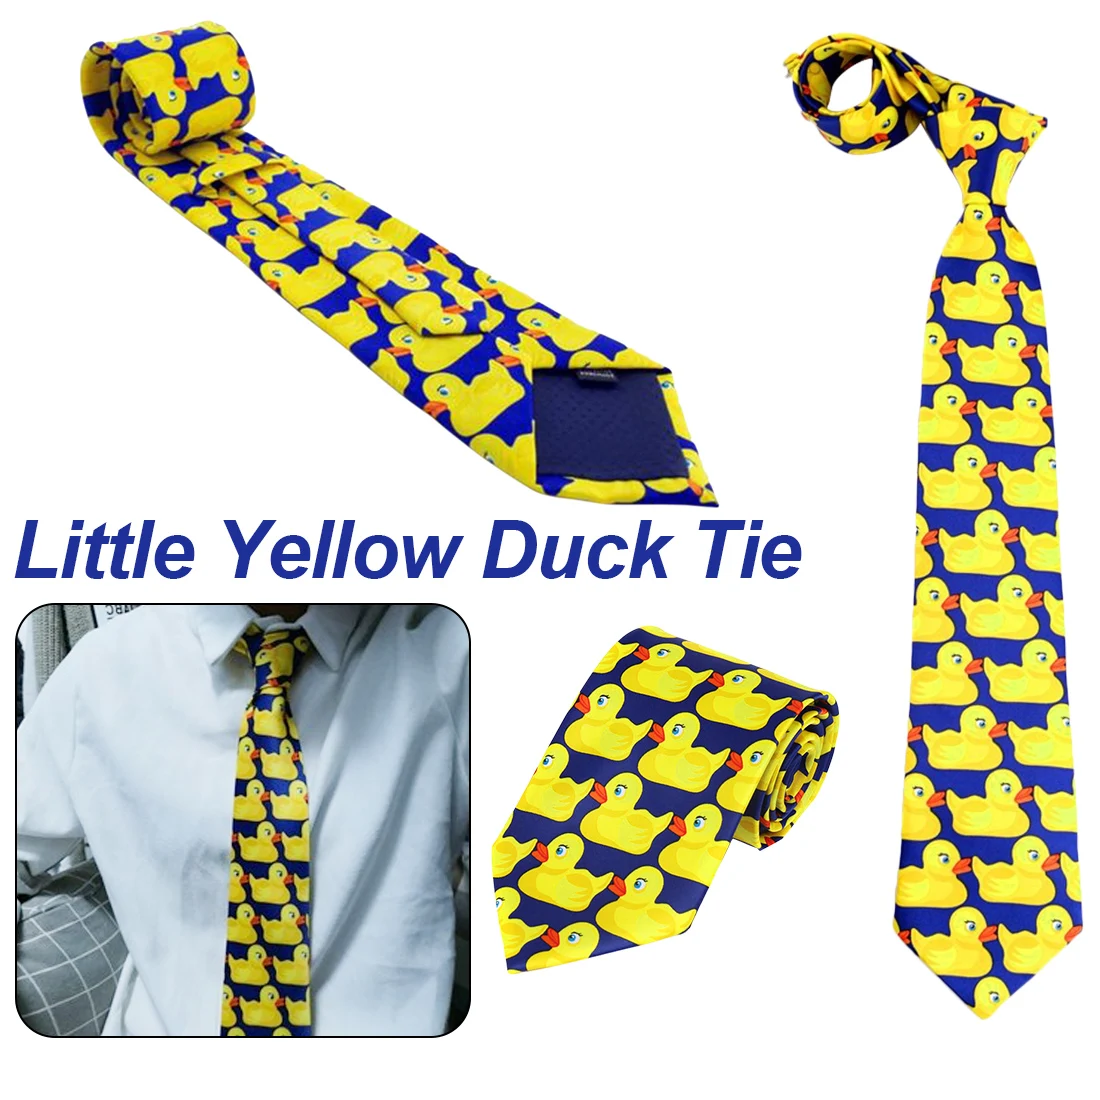 How I Met ваша мама Ducky галстук Желтая резиновая утка галстук Ducky горячий модный фирменный галстук